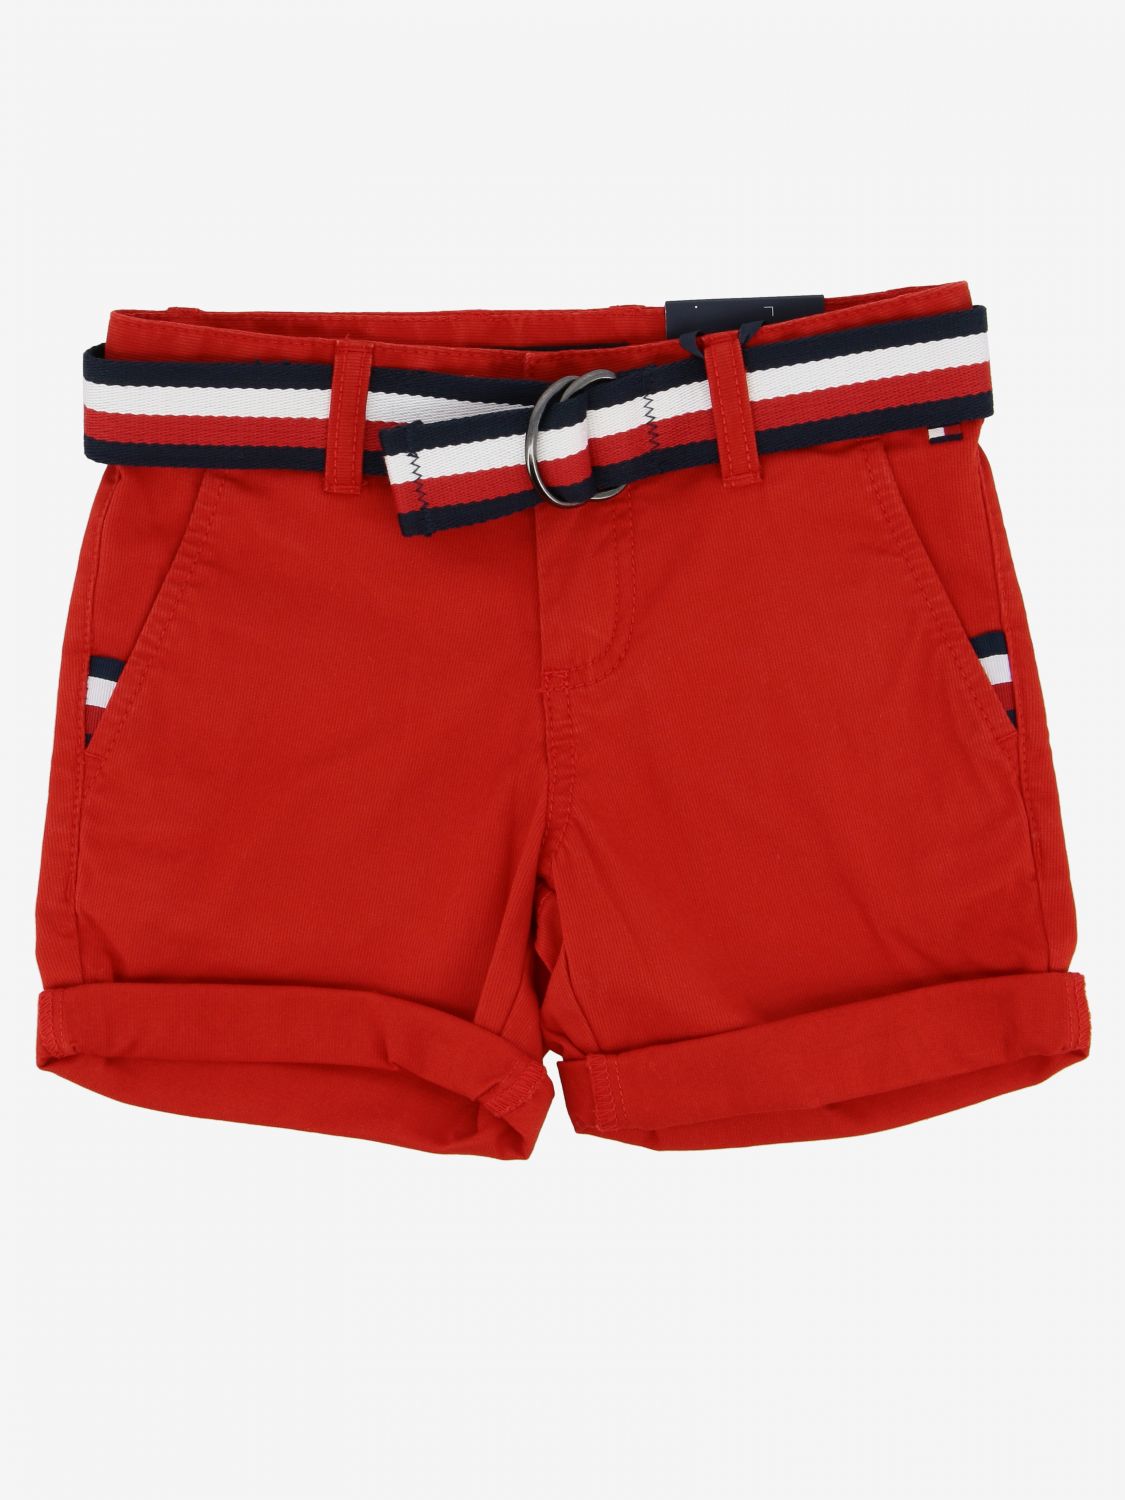 Tommy Hilfiger Outlet: shorts with belt 